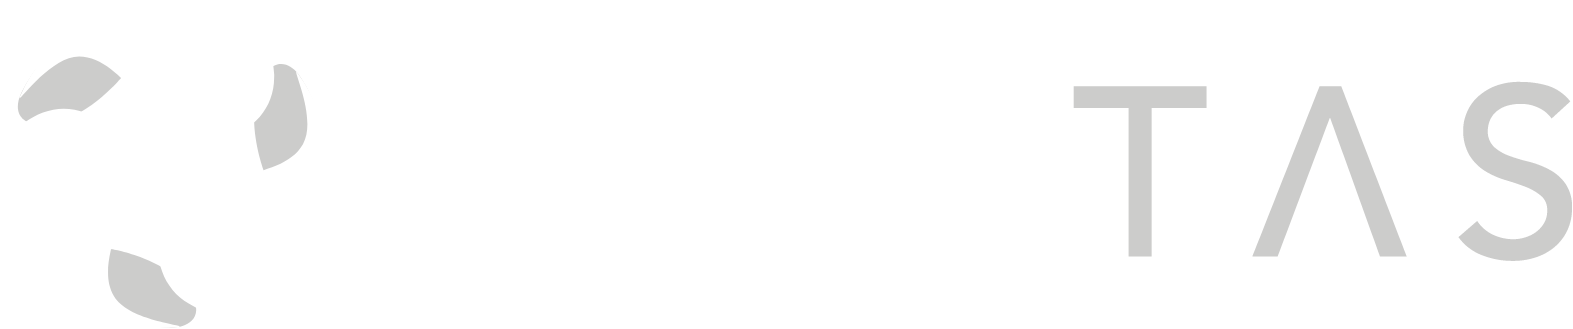 Civitas Resources logo grand pour les fonds sombres (PNG transparent)